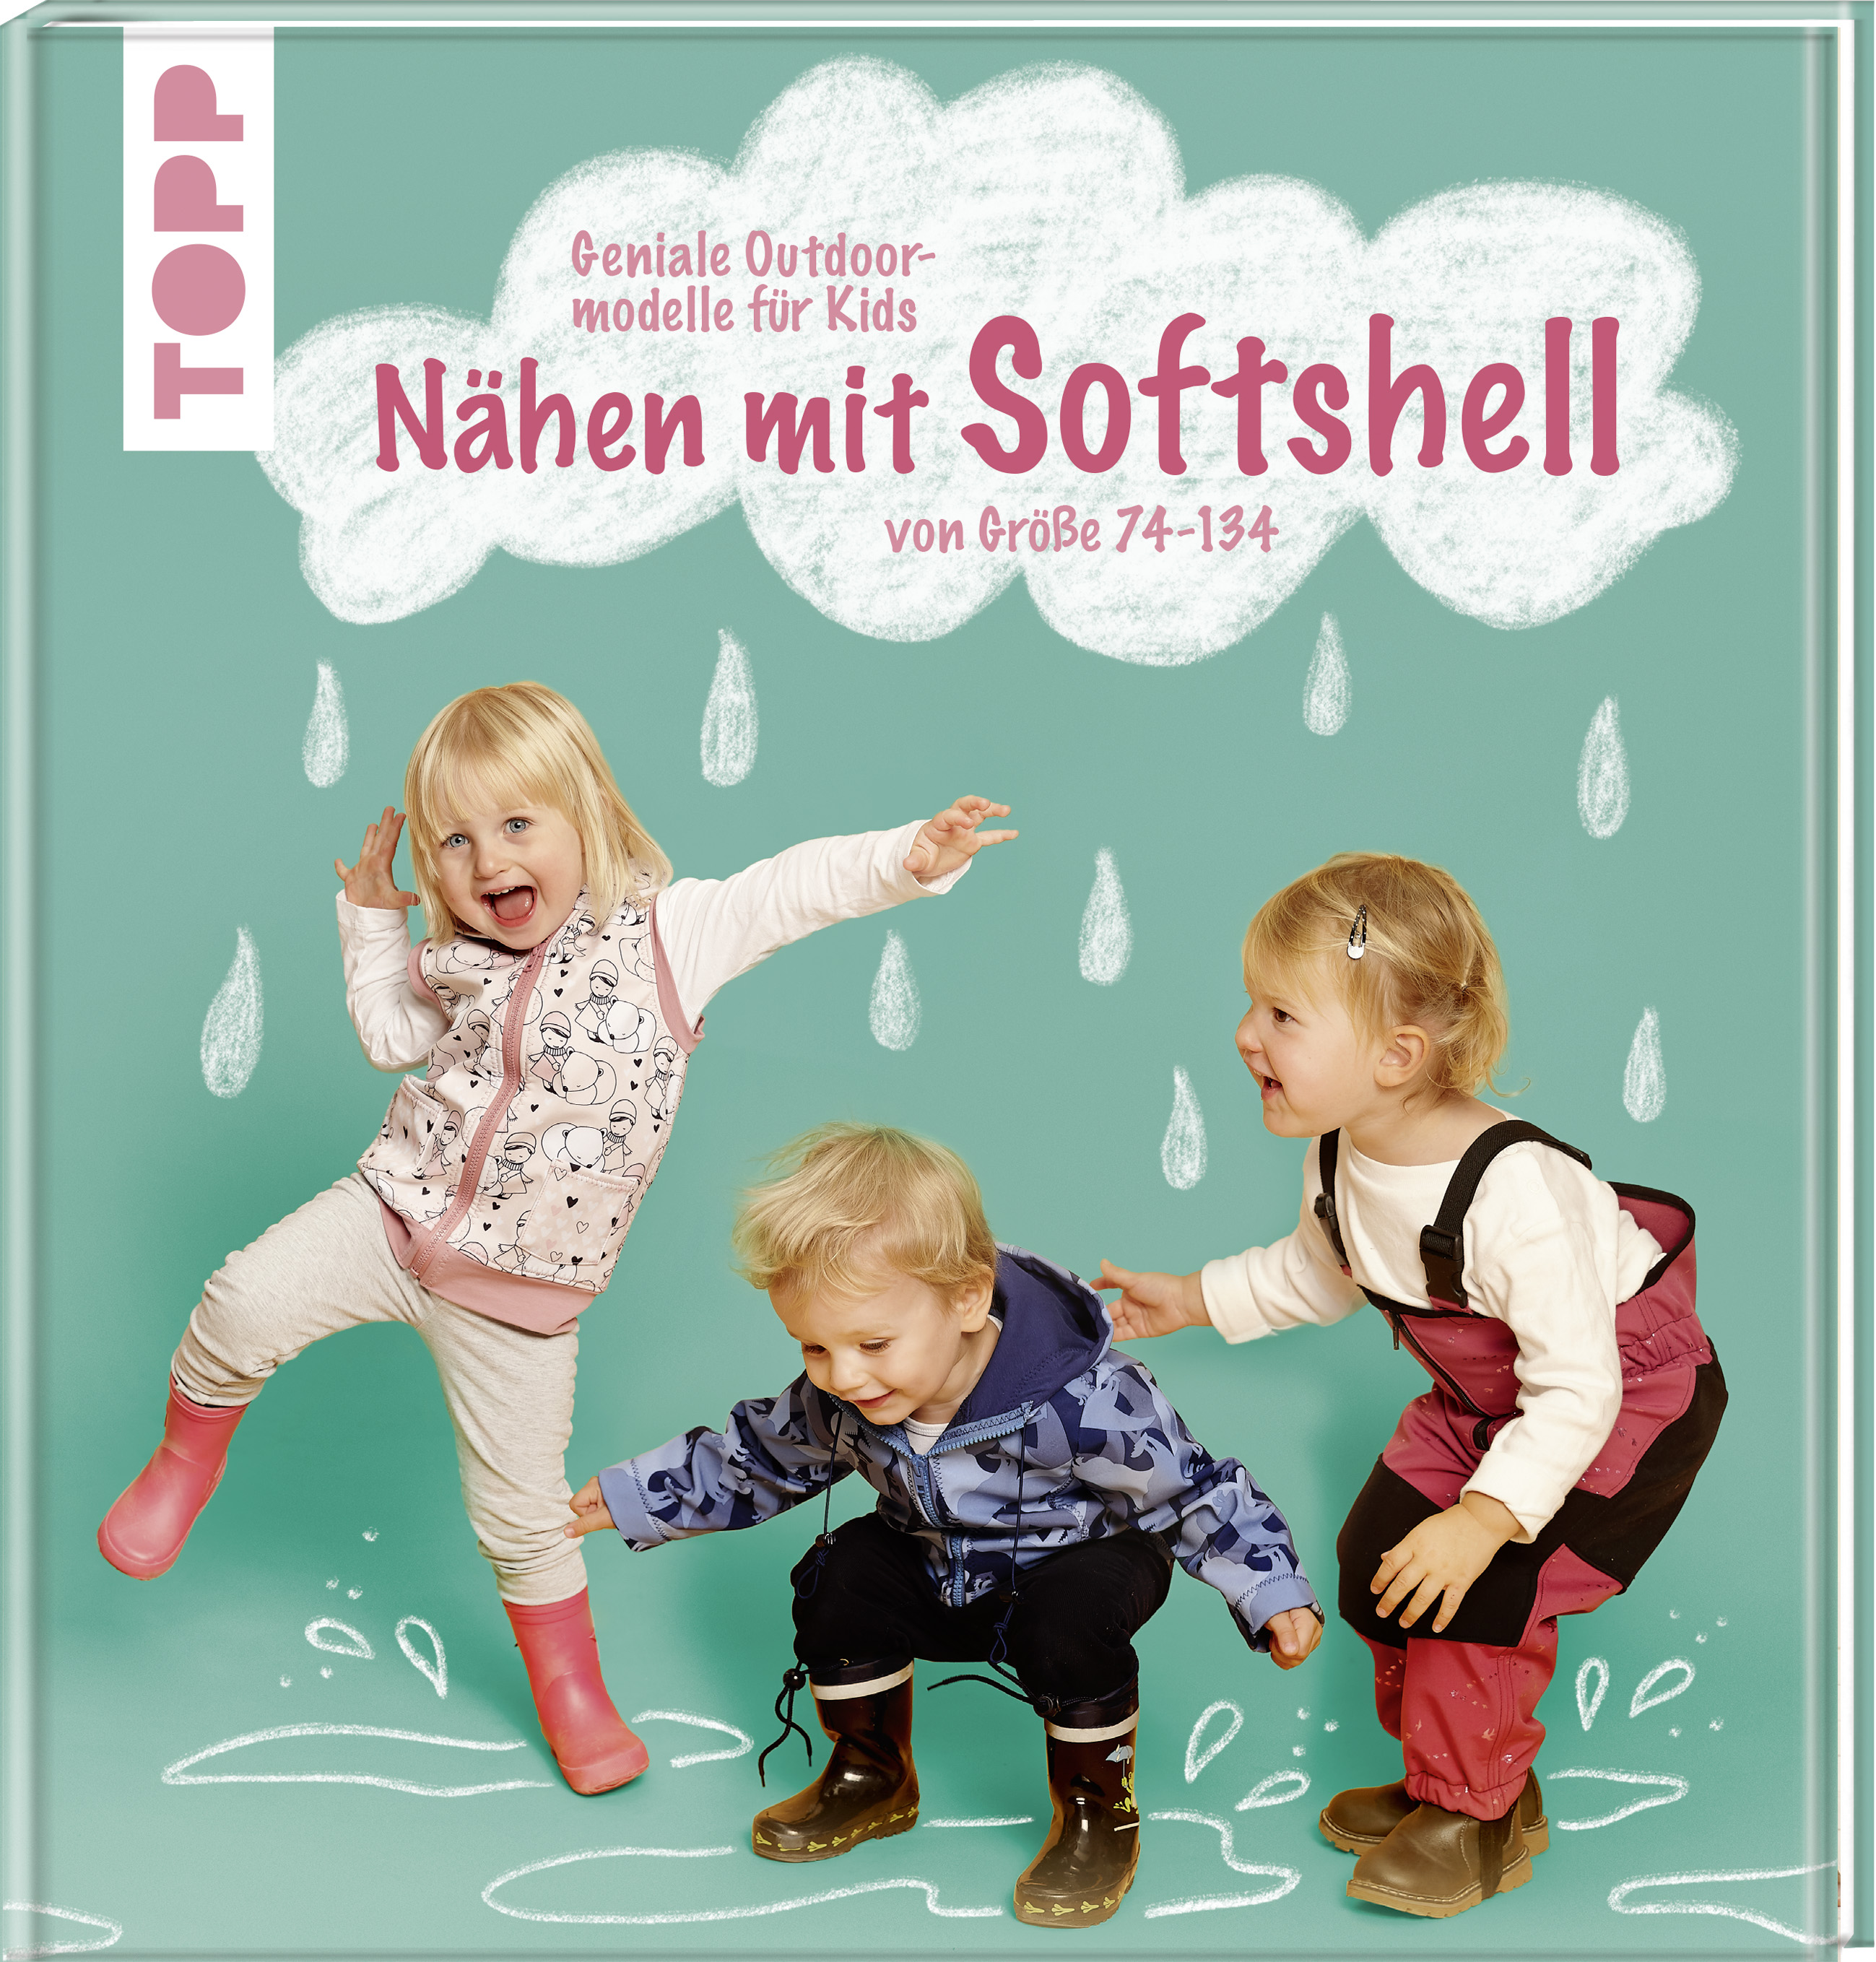 Nähen mit Softshell - Geniale Outdoormodelle für Kids